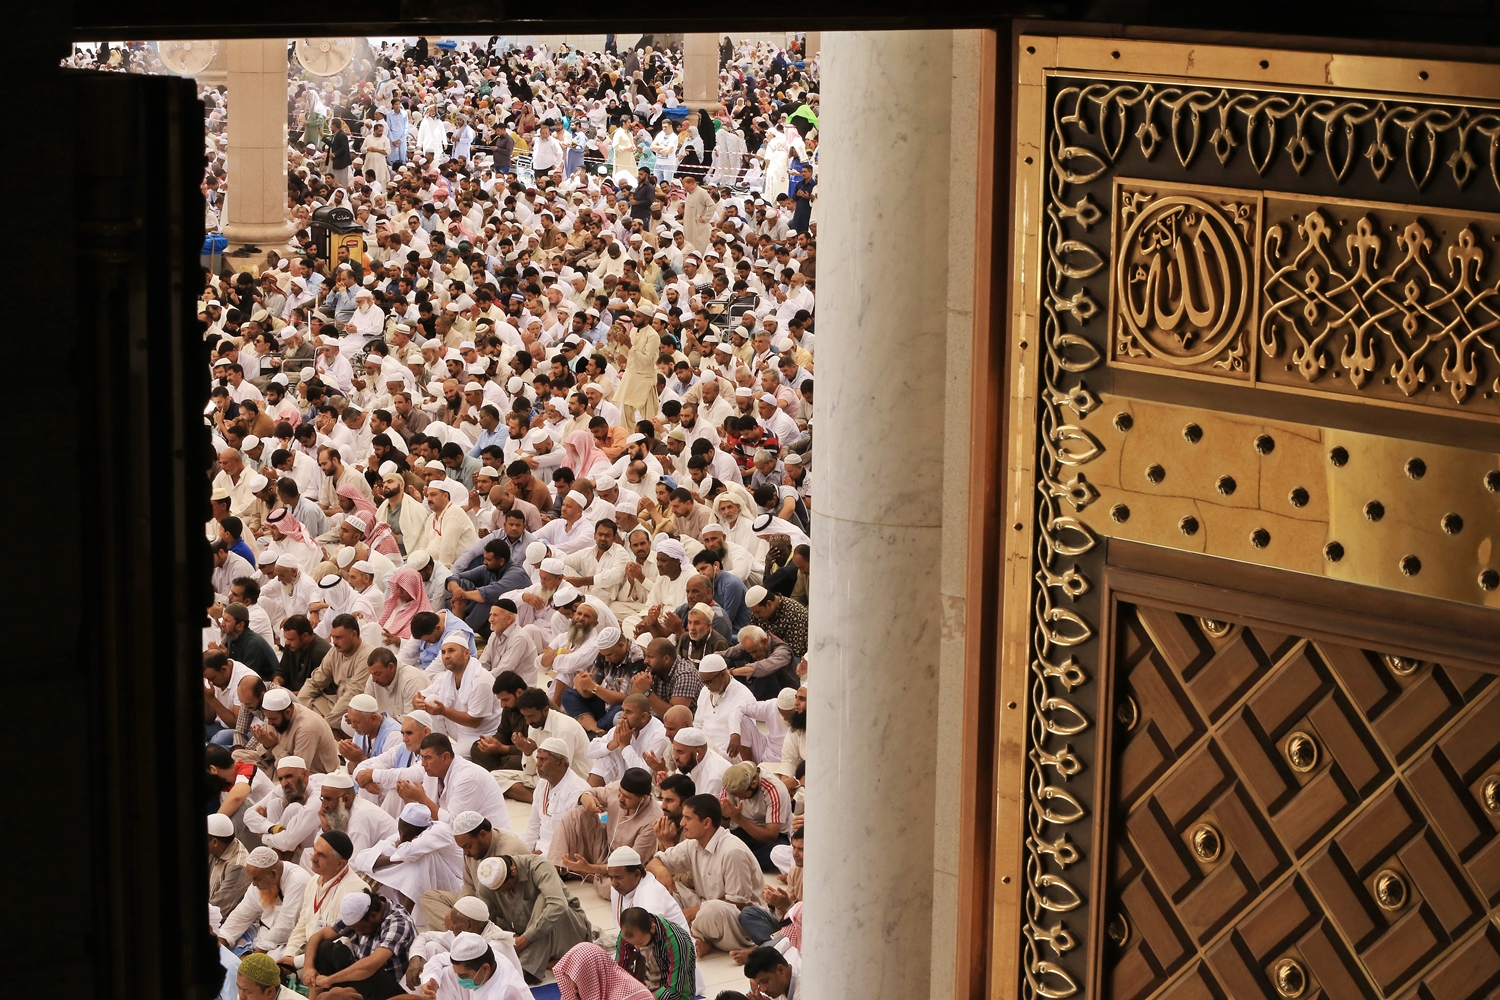 خطيب الحرم النبوي: في المسجد تعلن الجموع أنها أمة النظام والانتظام